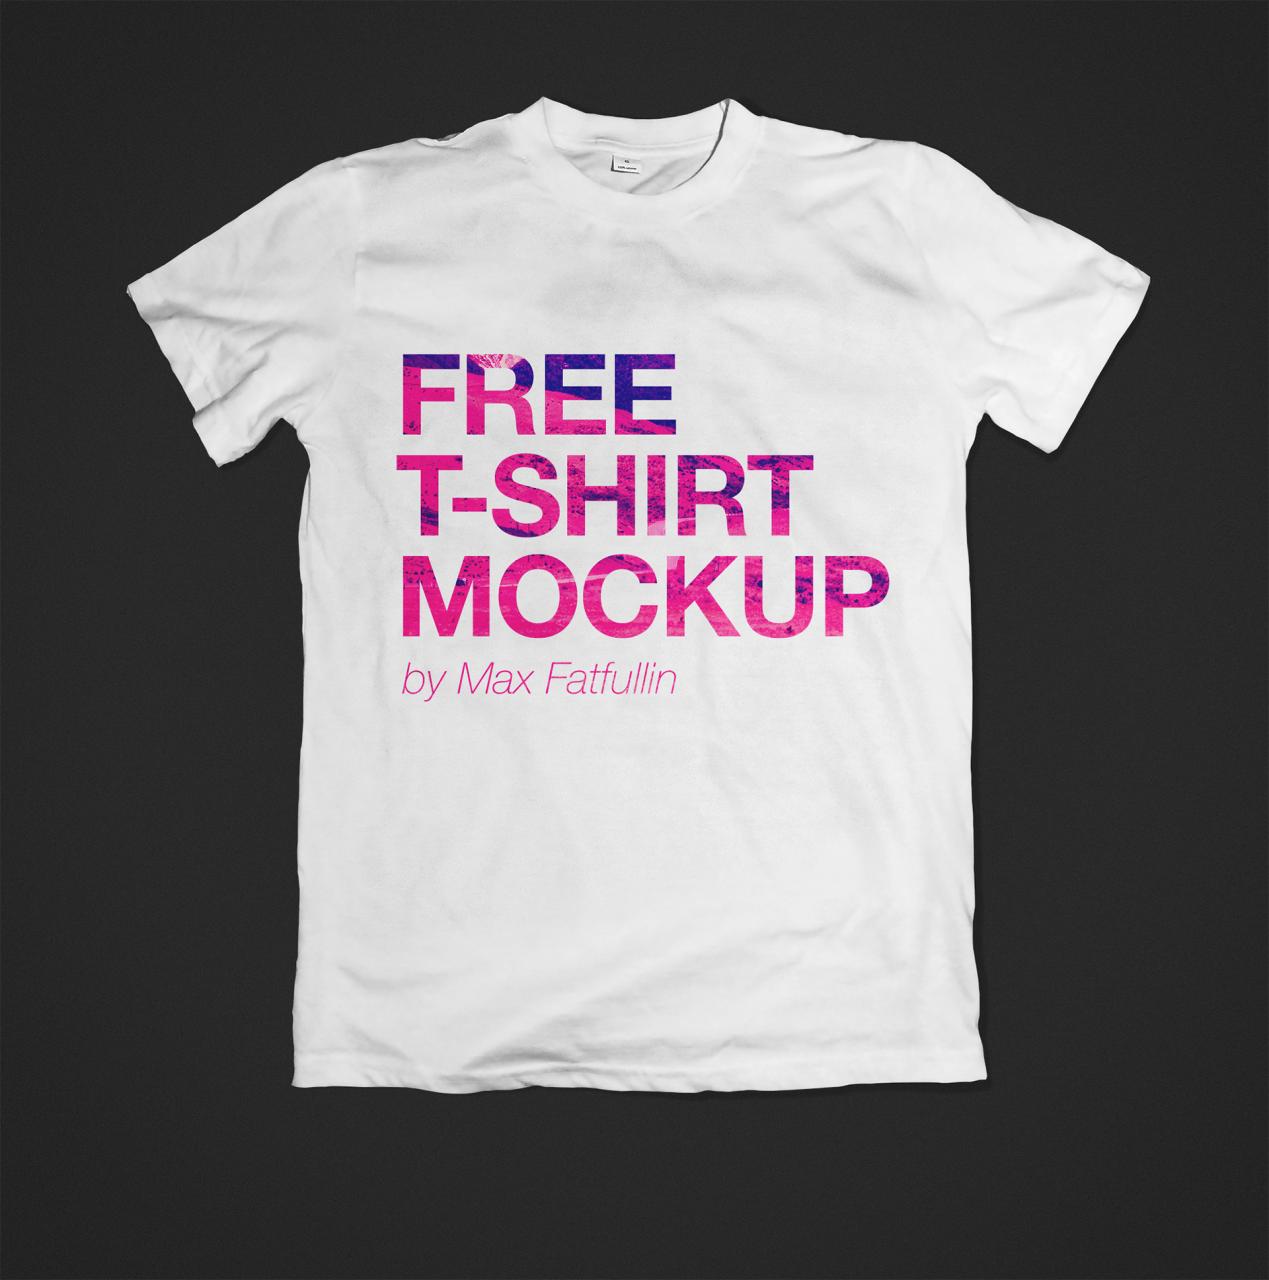 Mockup T Shirt Photoshop Free